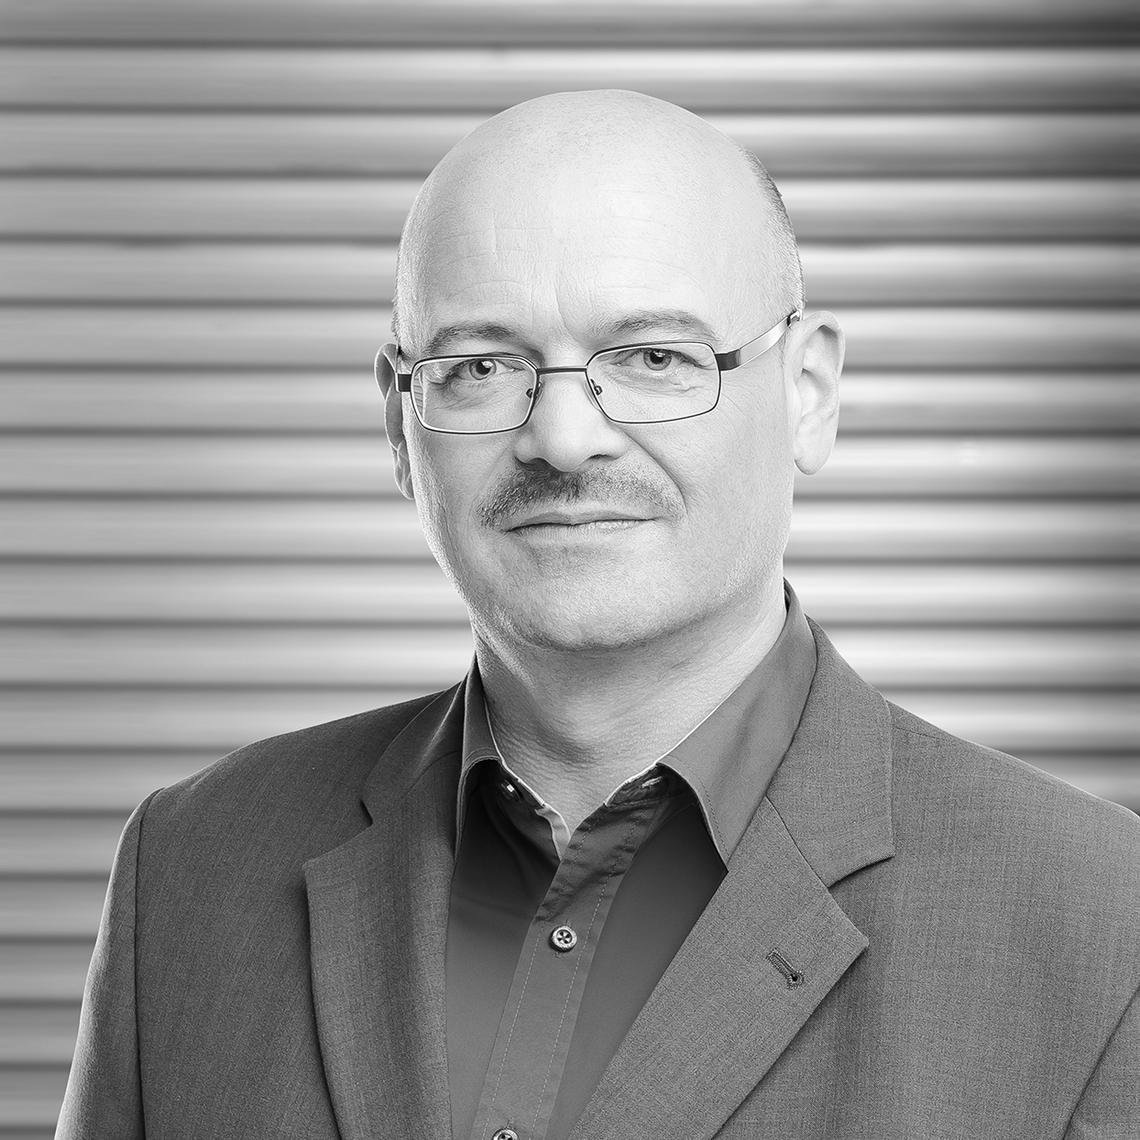 Dirk Fuchs, directeur général de la société Dirk Fuchs Automatisierungstechnik GmbH